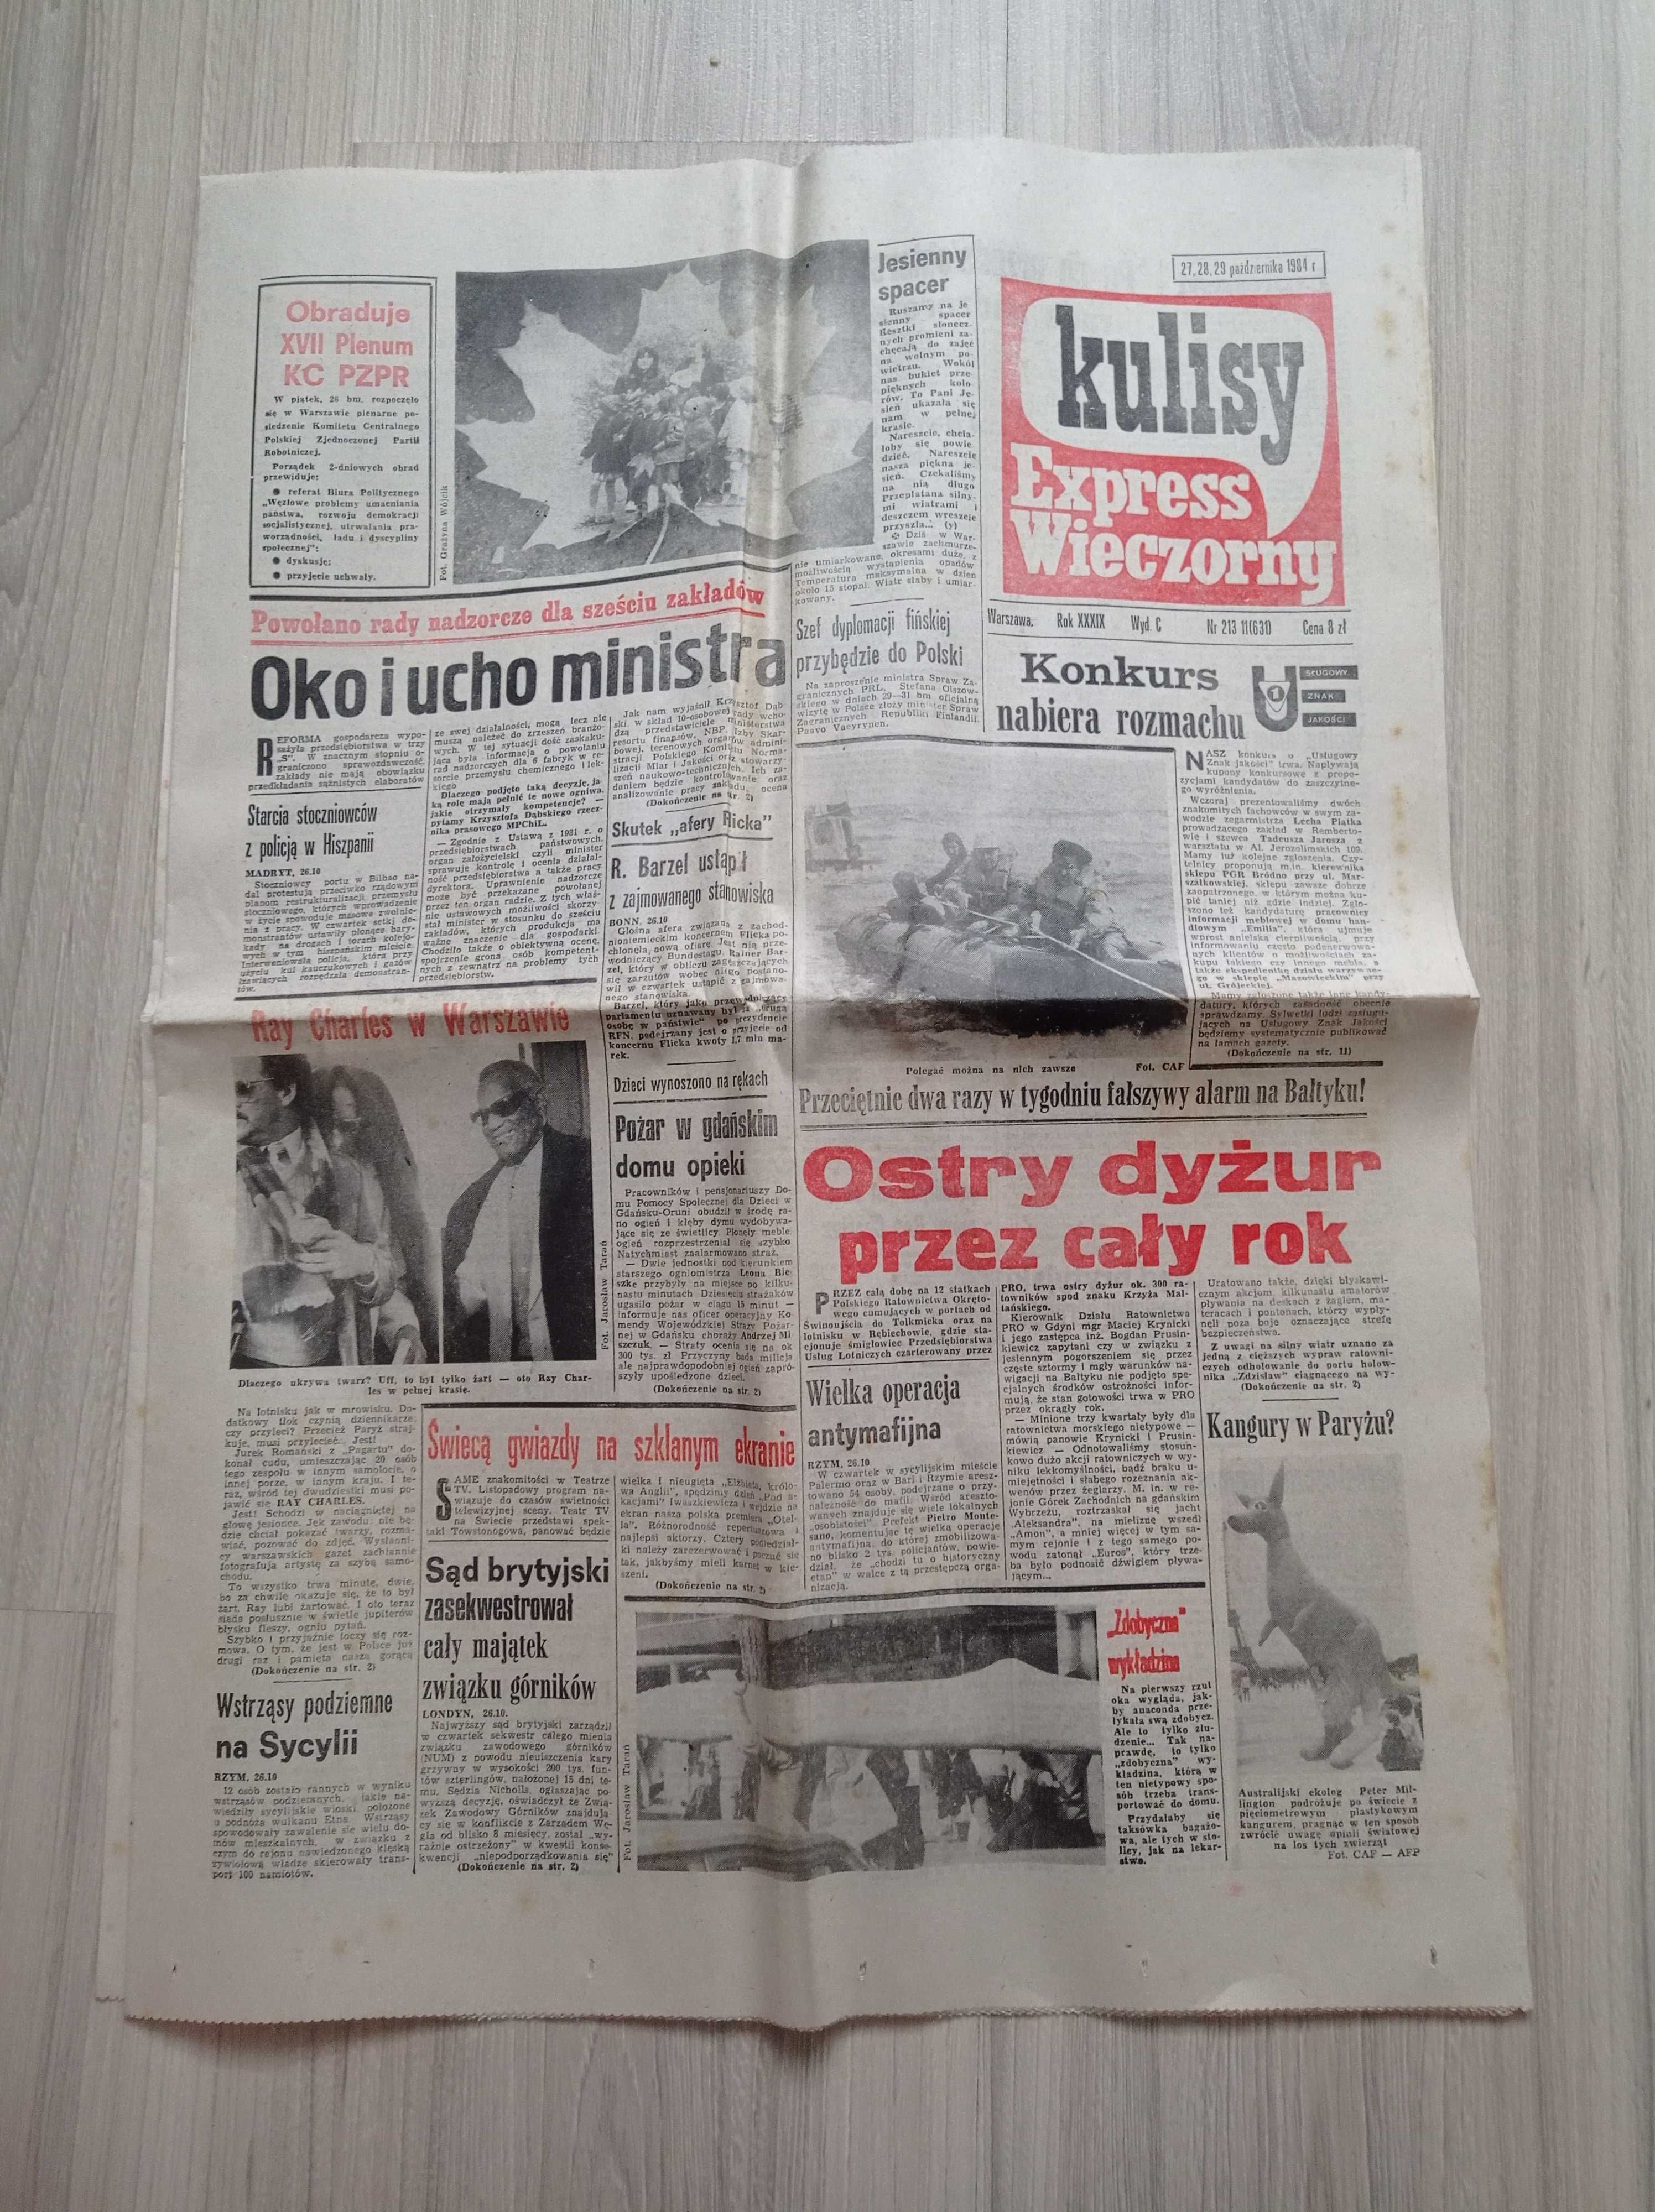 Kulisy Express Wieczorny, nr 213 / 1984, 27,28,29 października 1984